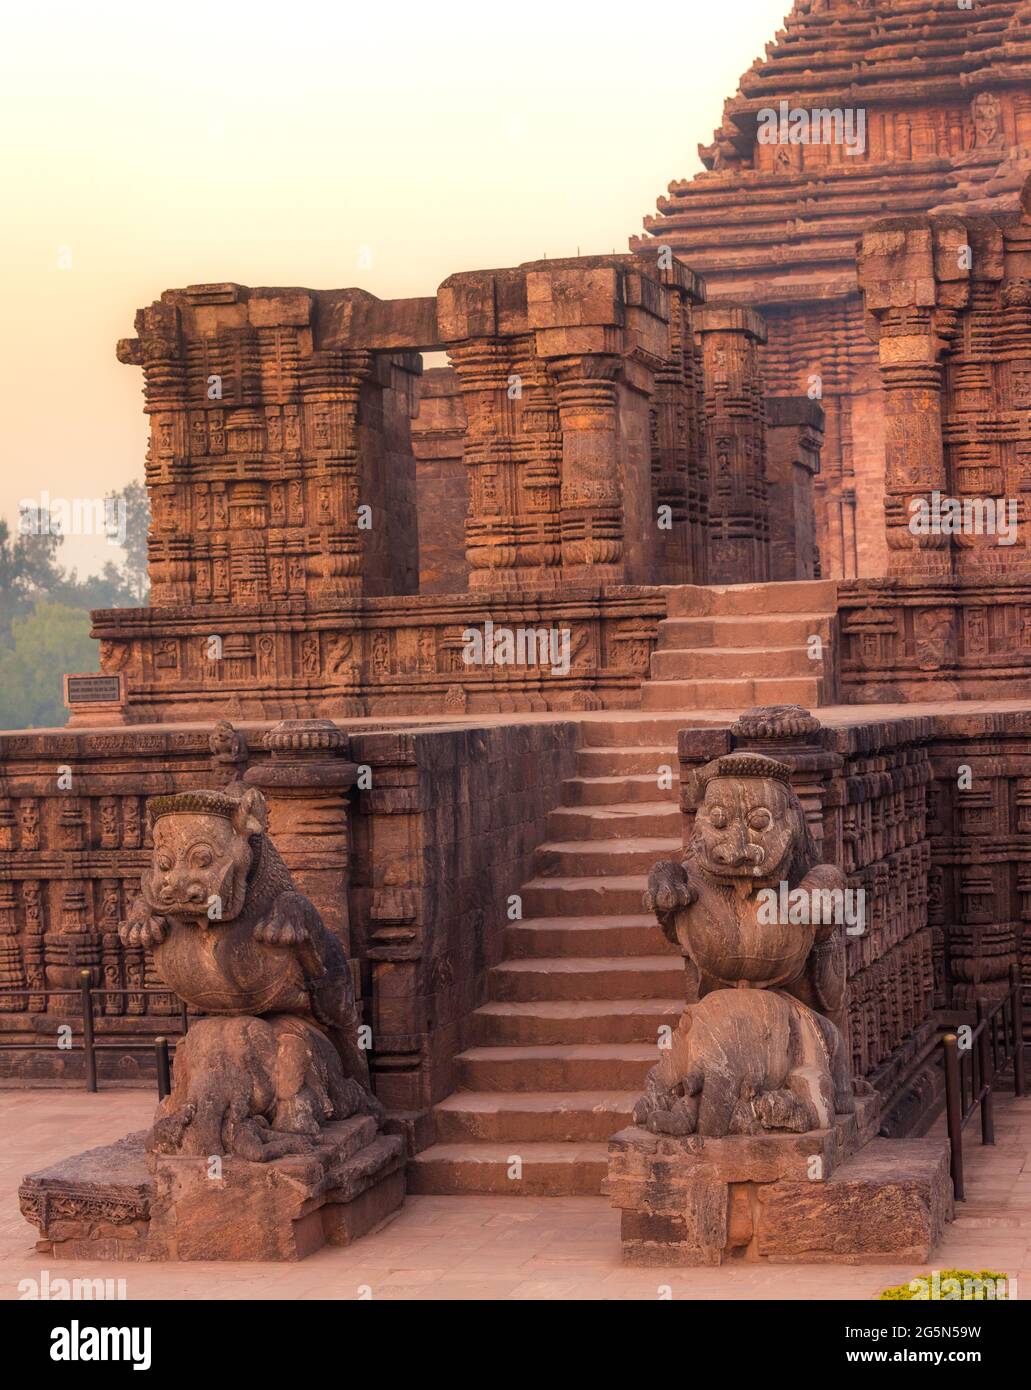 Ingresso principale del Tempio del Sole di 800 anni, Konark, India. Temple è progettato come un carro costituito da 24 ruote di questo tipo. Patrimonio dell'umanità dell'UNESCO, Odisha Foto Stock